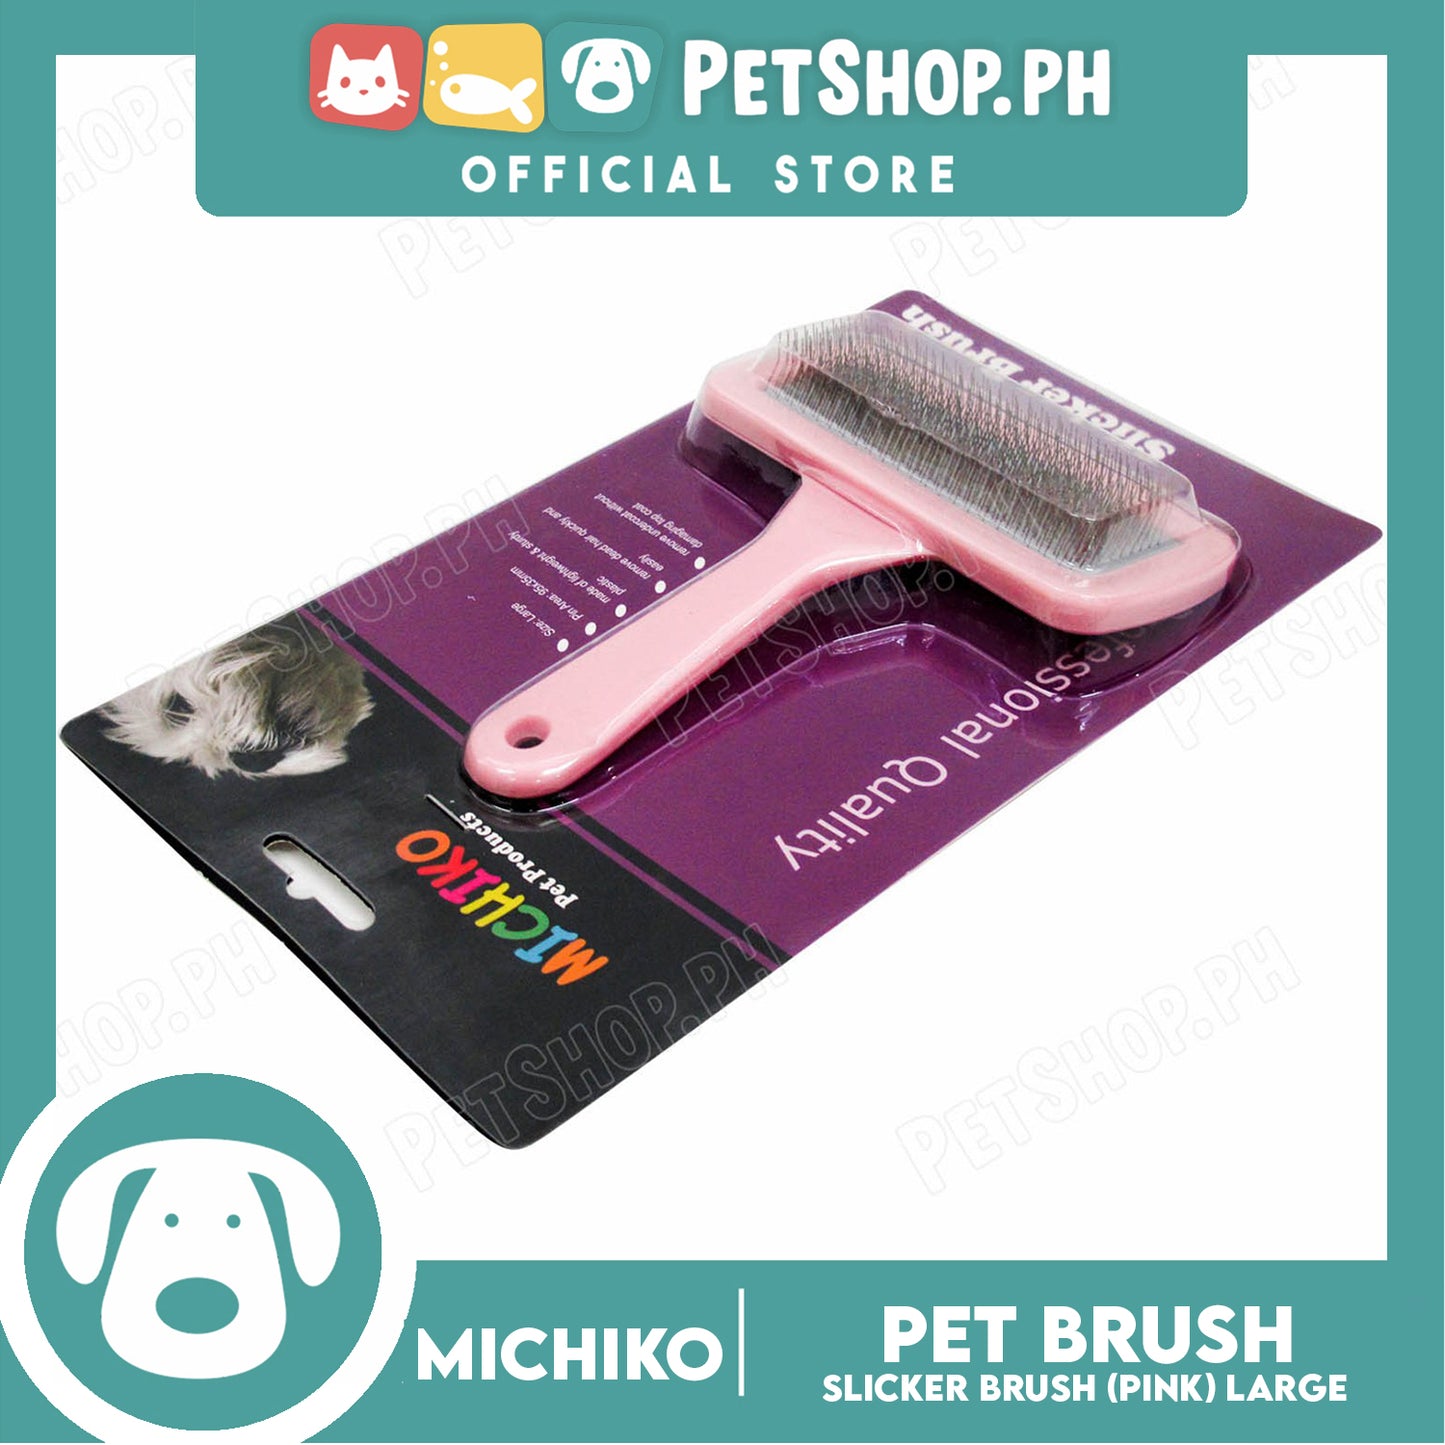 Michiko Slicker Brush Pink Color (Large) Pet Brush, Pet Grooming